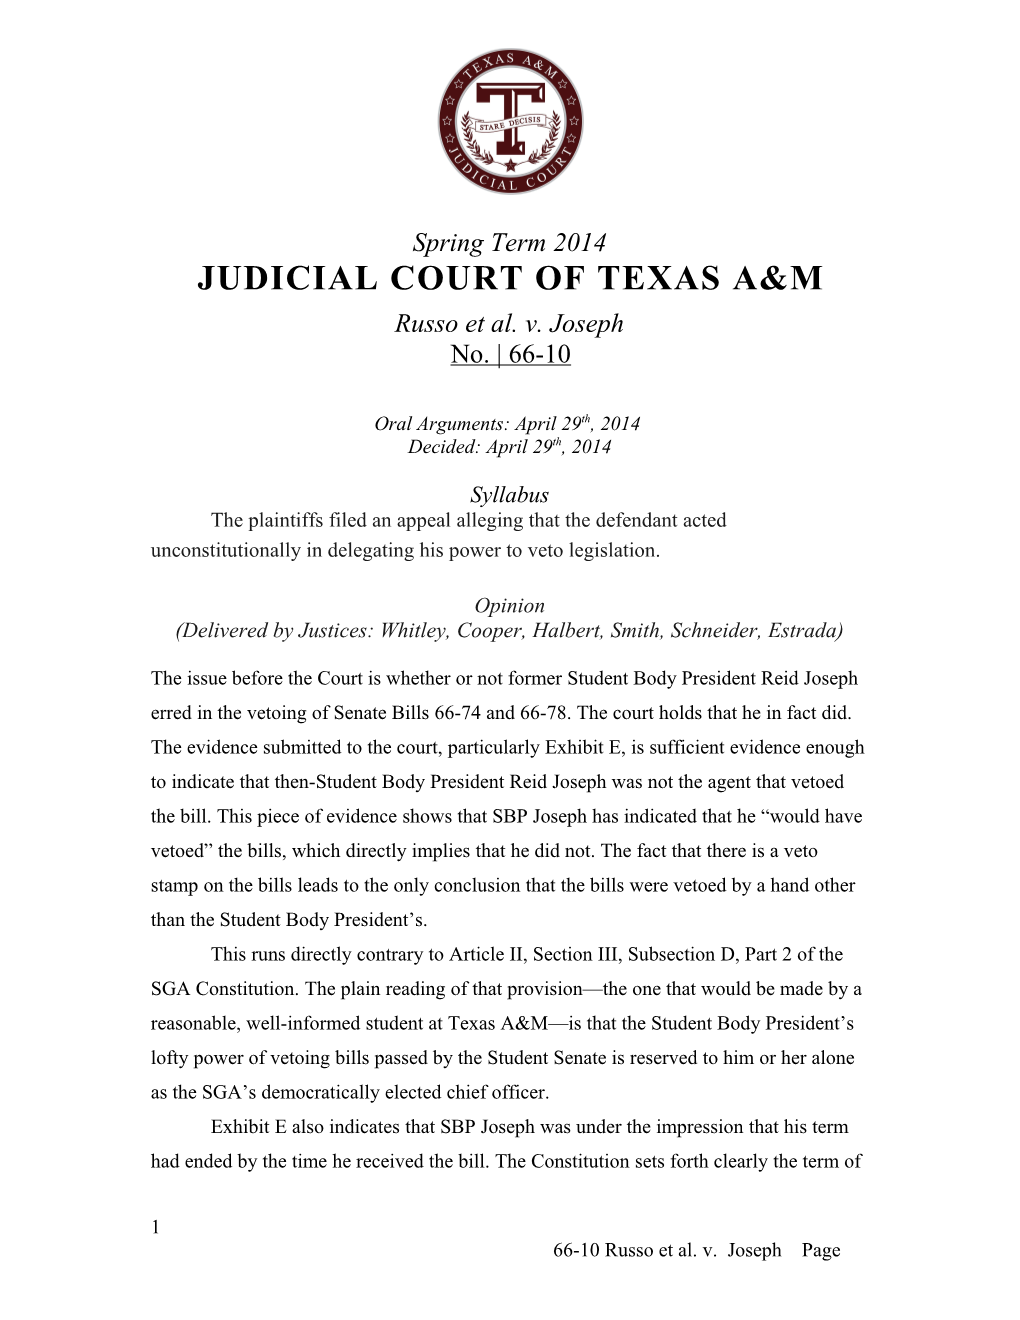 Judicial Court of Texas A&M